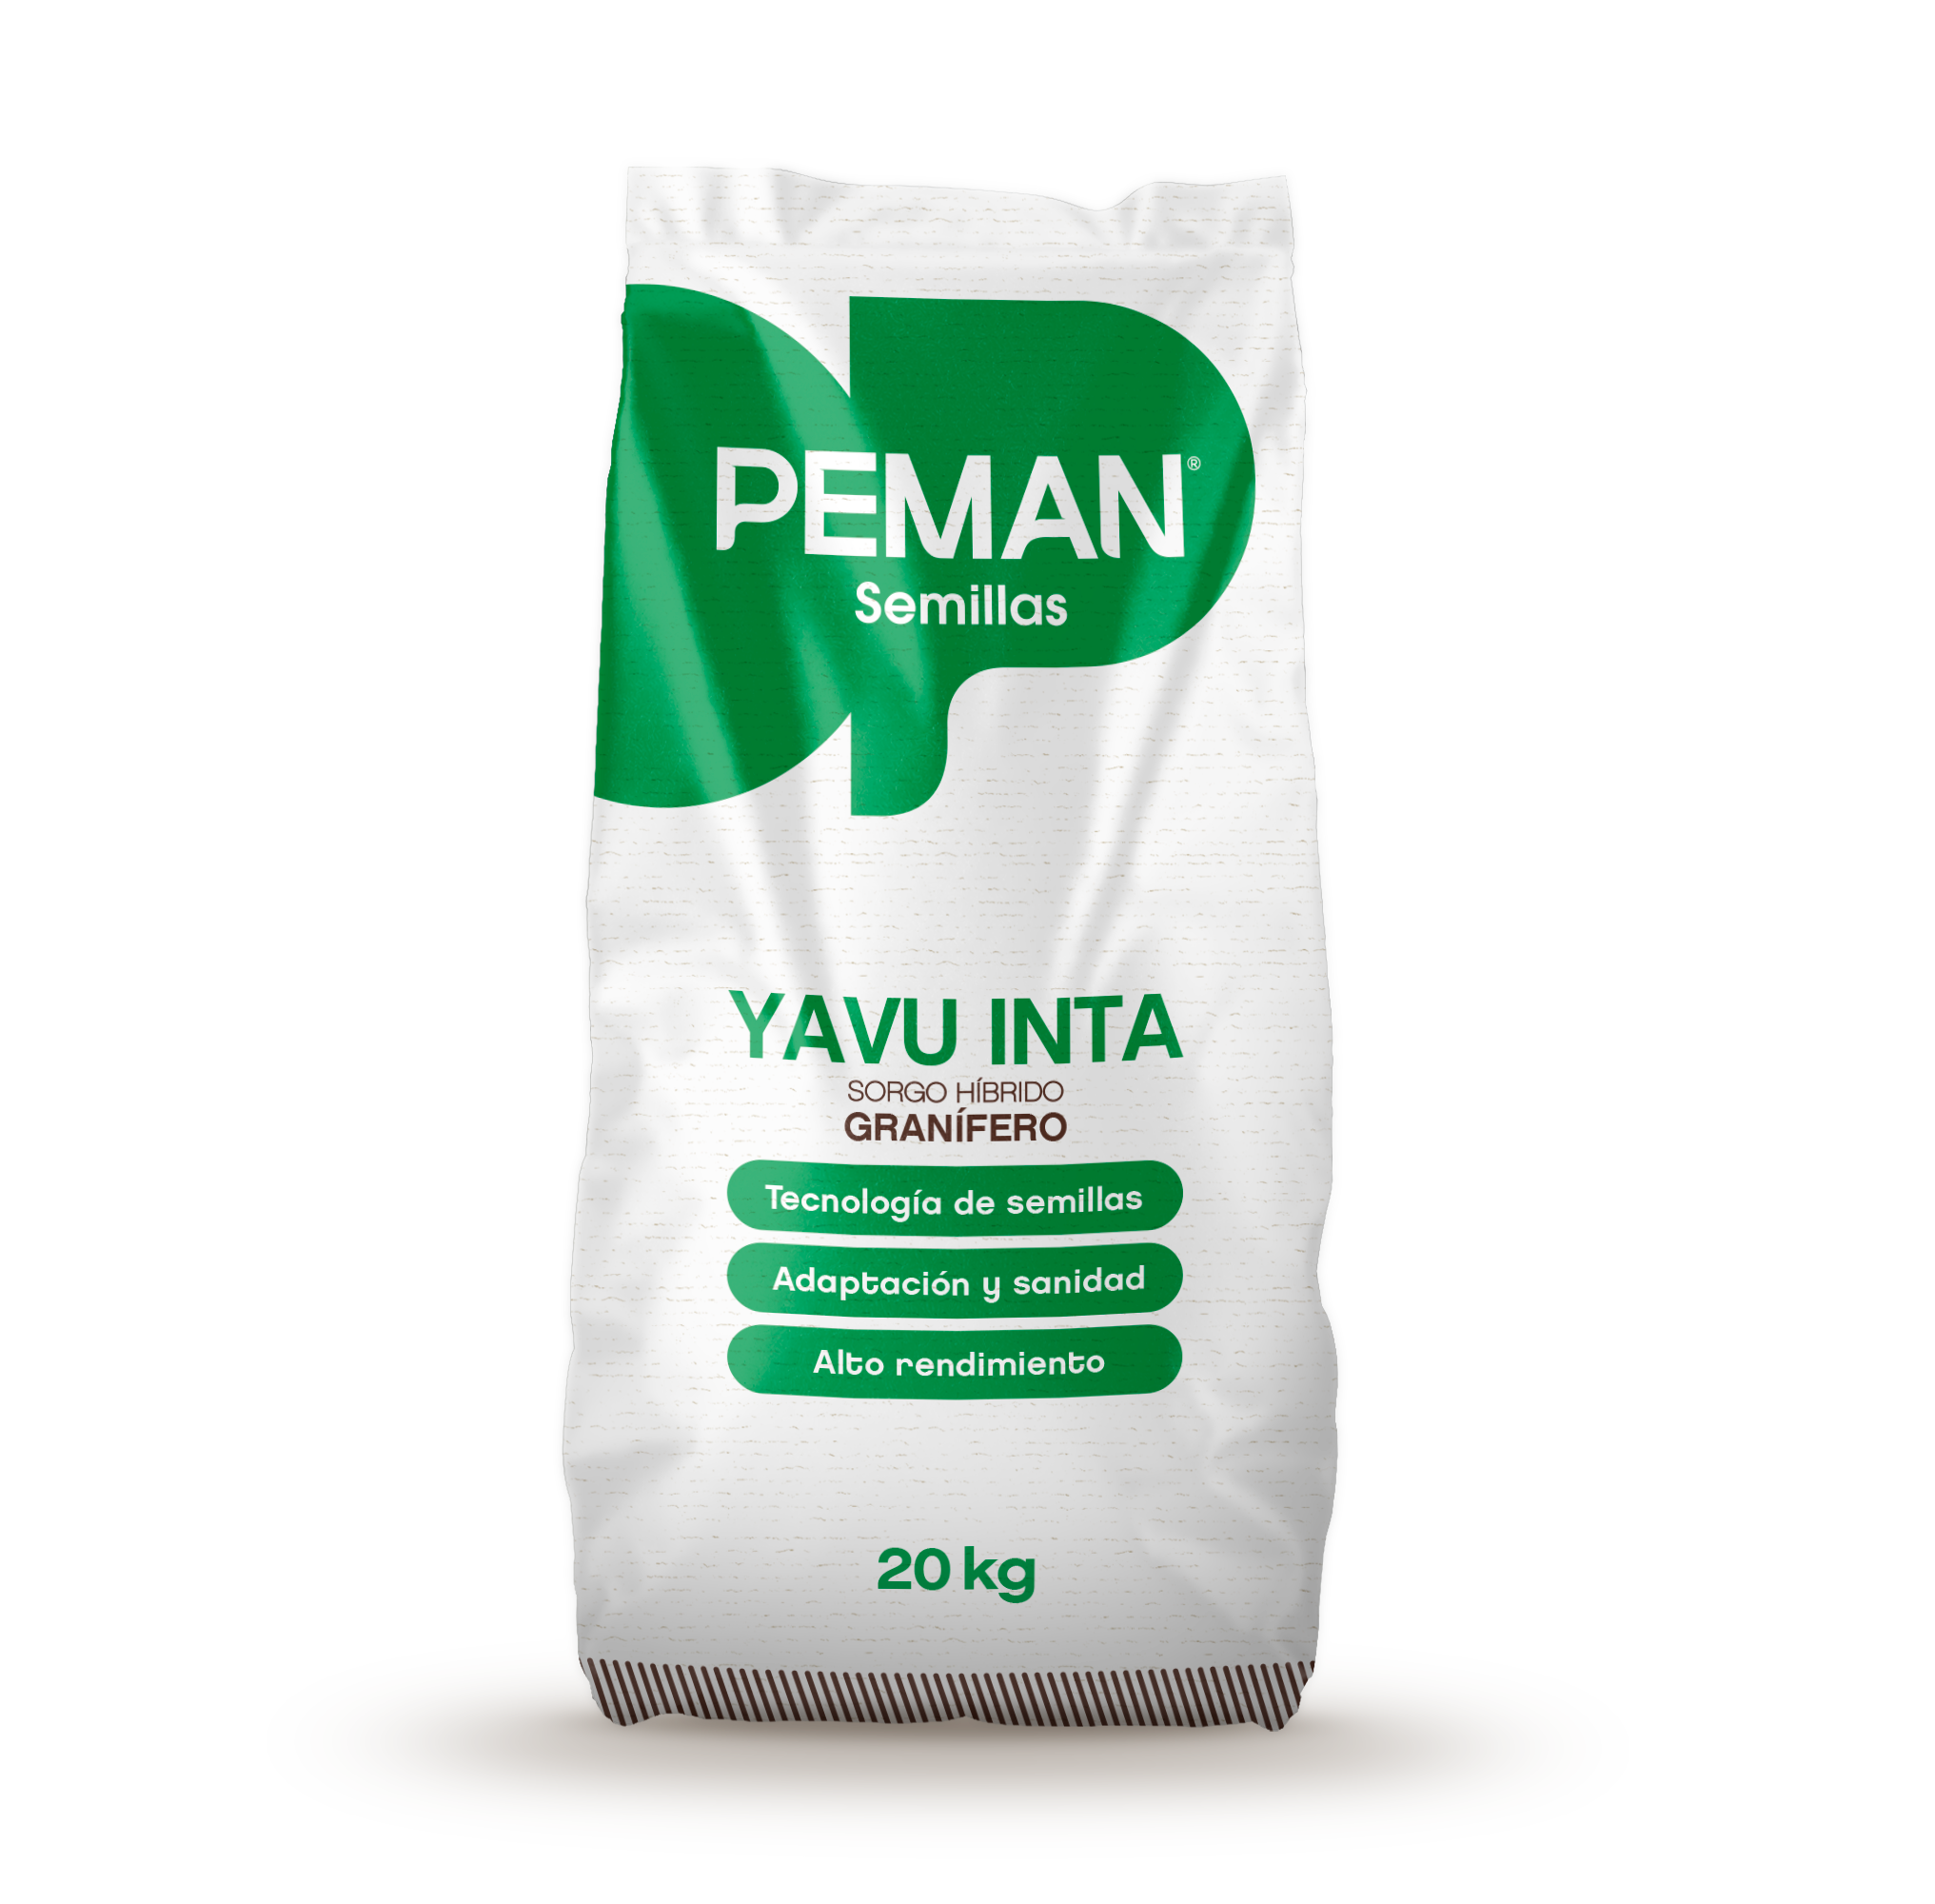 YAVU INTA Hybrid Grain Sorghum